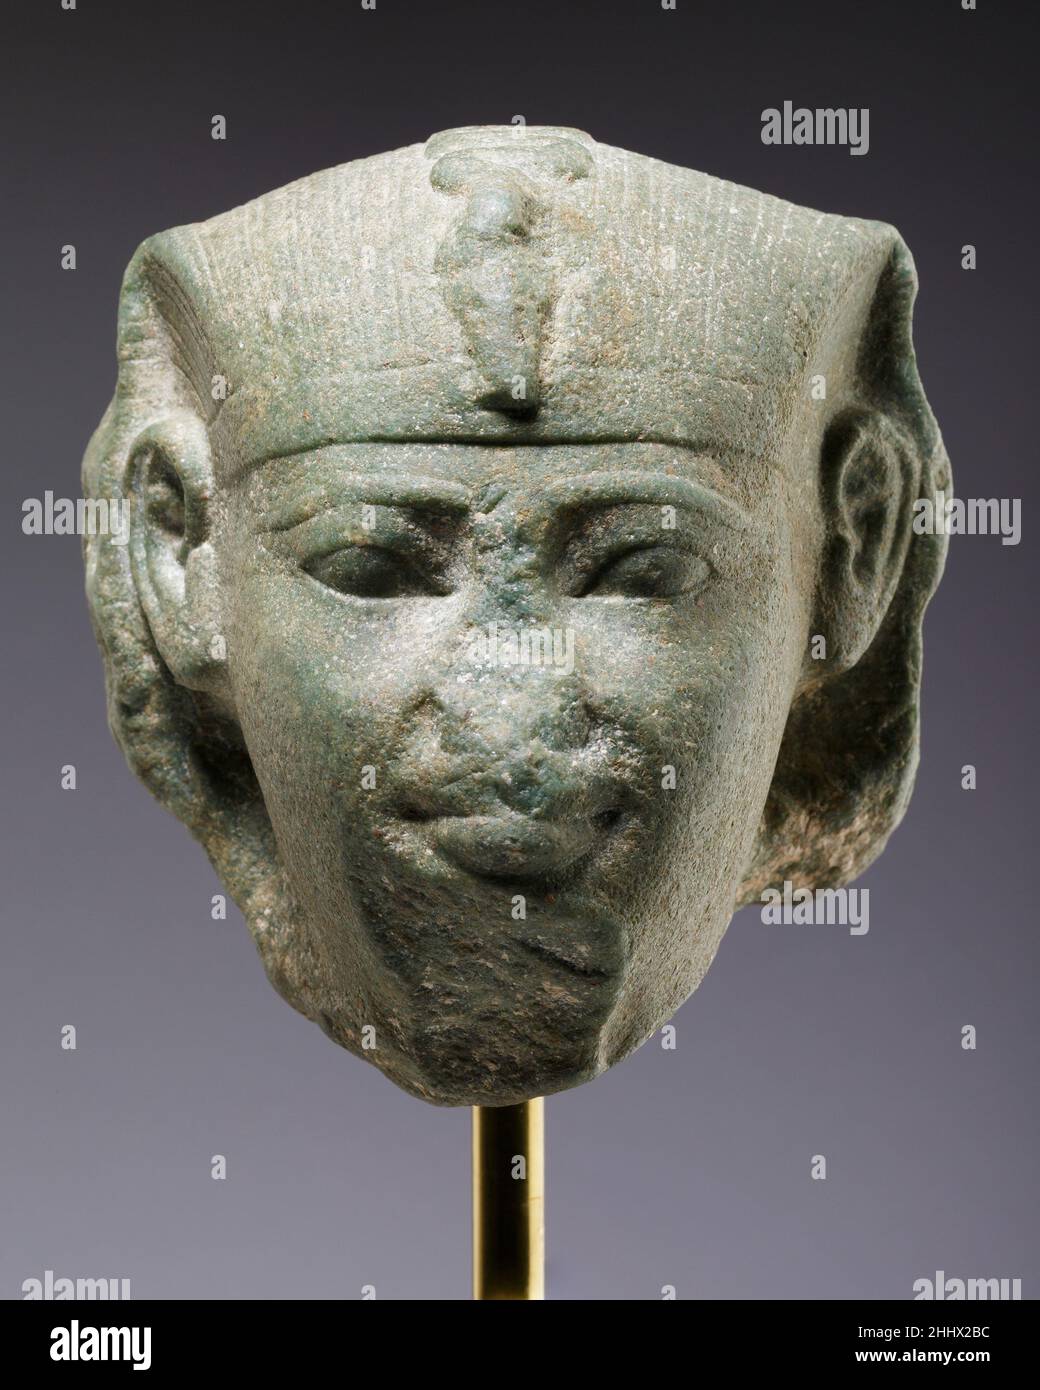 Chef d'un sphinx, peut-être d'Amenemhat je ca.1981–1952 B.C. Middle Kingdom la bouche souriante, les yeux larges ouverts et les joues arrondies suggèrent un roi jeune, et les proportions des nemes, ainsi que la profondeur de la rupture, indiquent que la tête faisait partie d'un sphinx comparativement petit.Le front bas, les sourcils hauts et la position élevée des oreilles rappellent la tête du Metropolitan Museum of Art attribuée à Mentuhotep III (66.99.3), mais les yeux de la tête actuelle sont plus grands, les joues plus maigres et la bouche plus modulée.Ces caractéristiques sont également vues dans la tête d'une statue i Banque D'Images